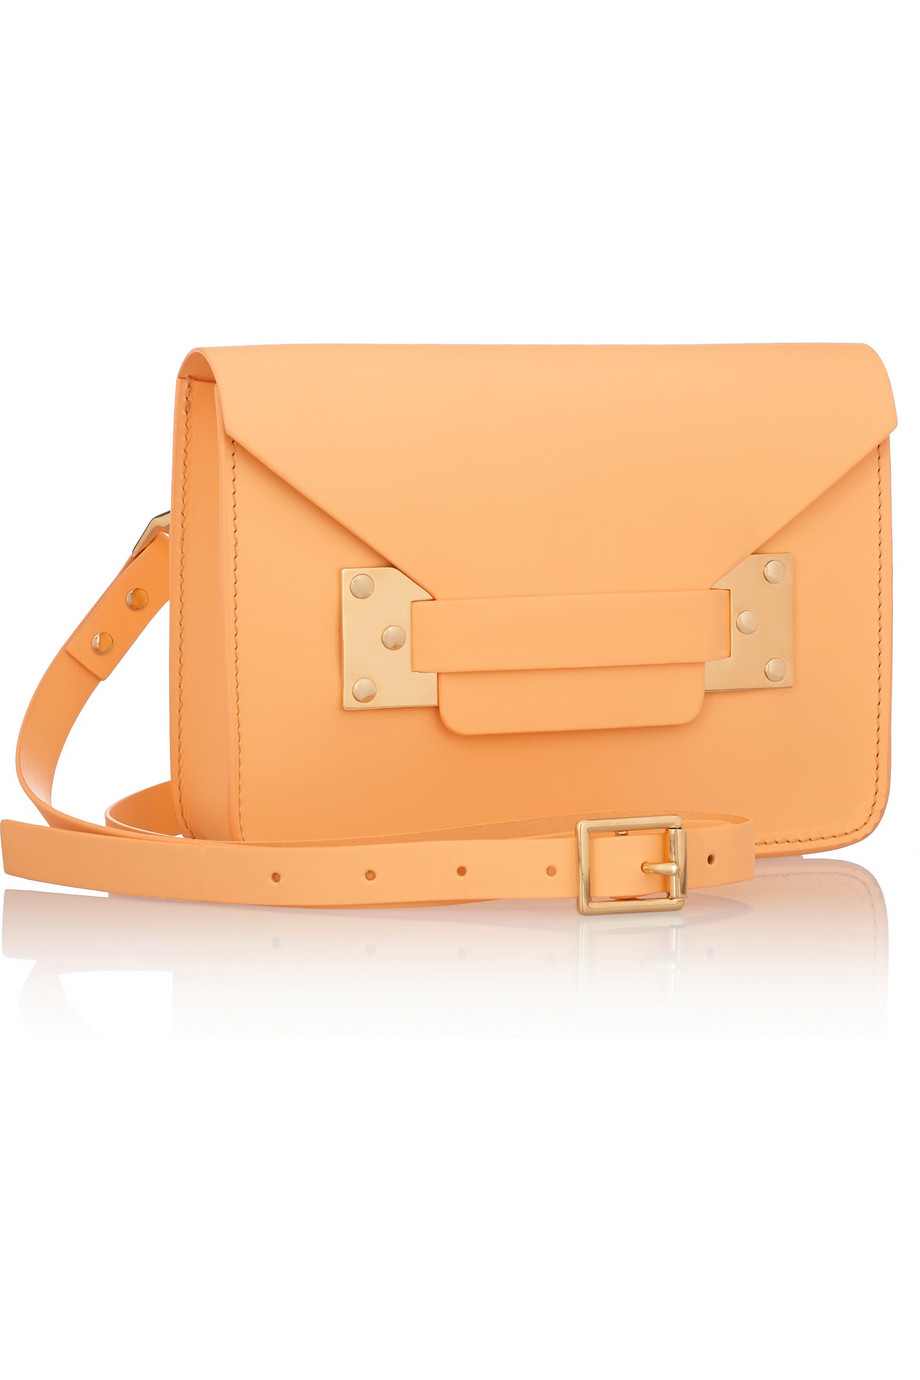 Sophie hulme Envelope Mini Leather Shoulder Bag in Orange | Lyst